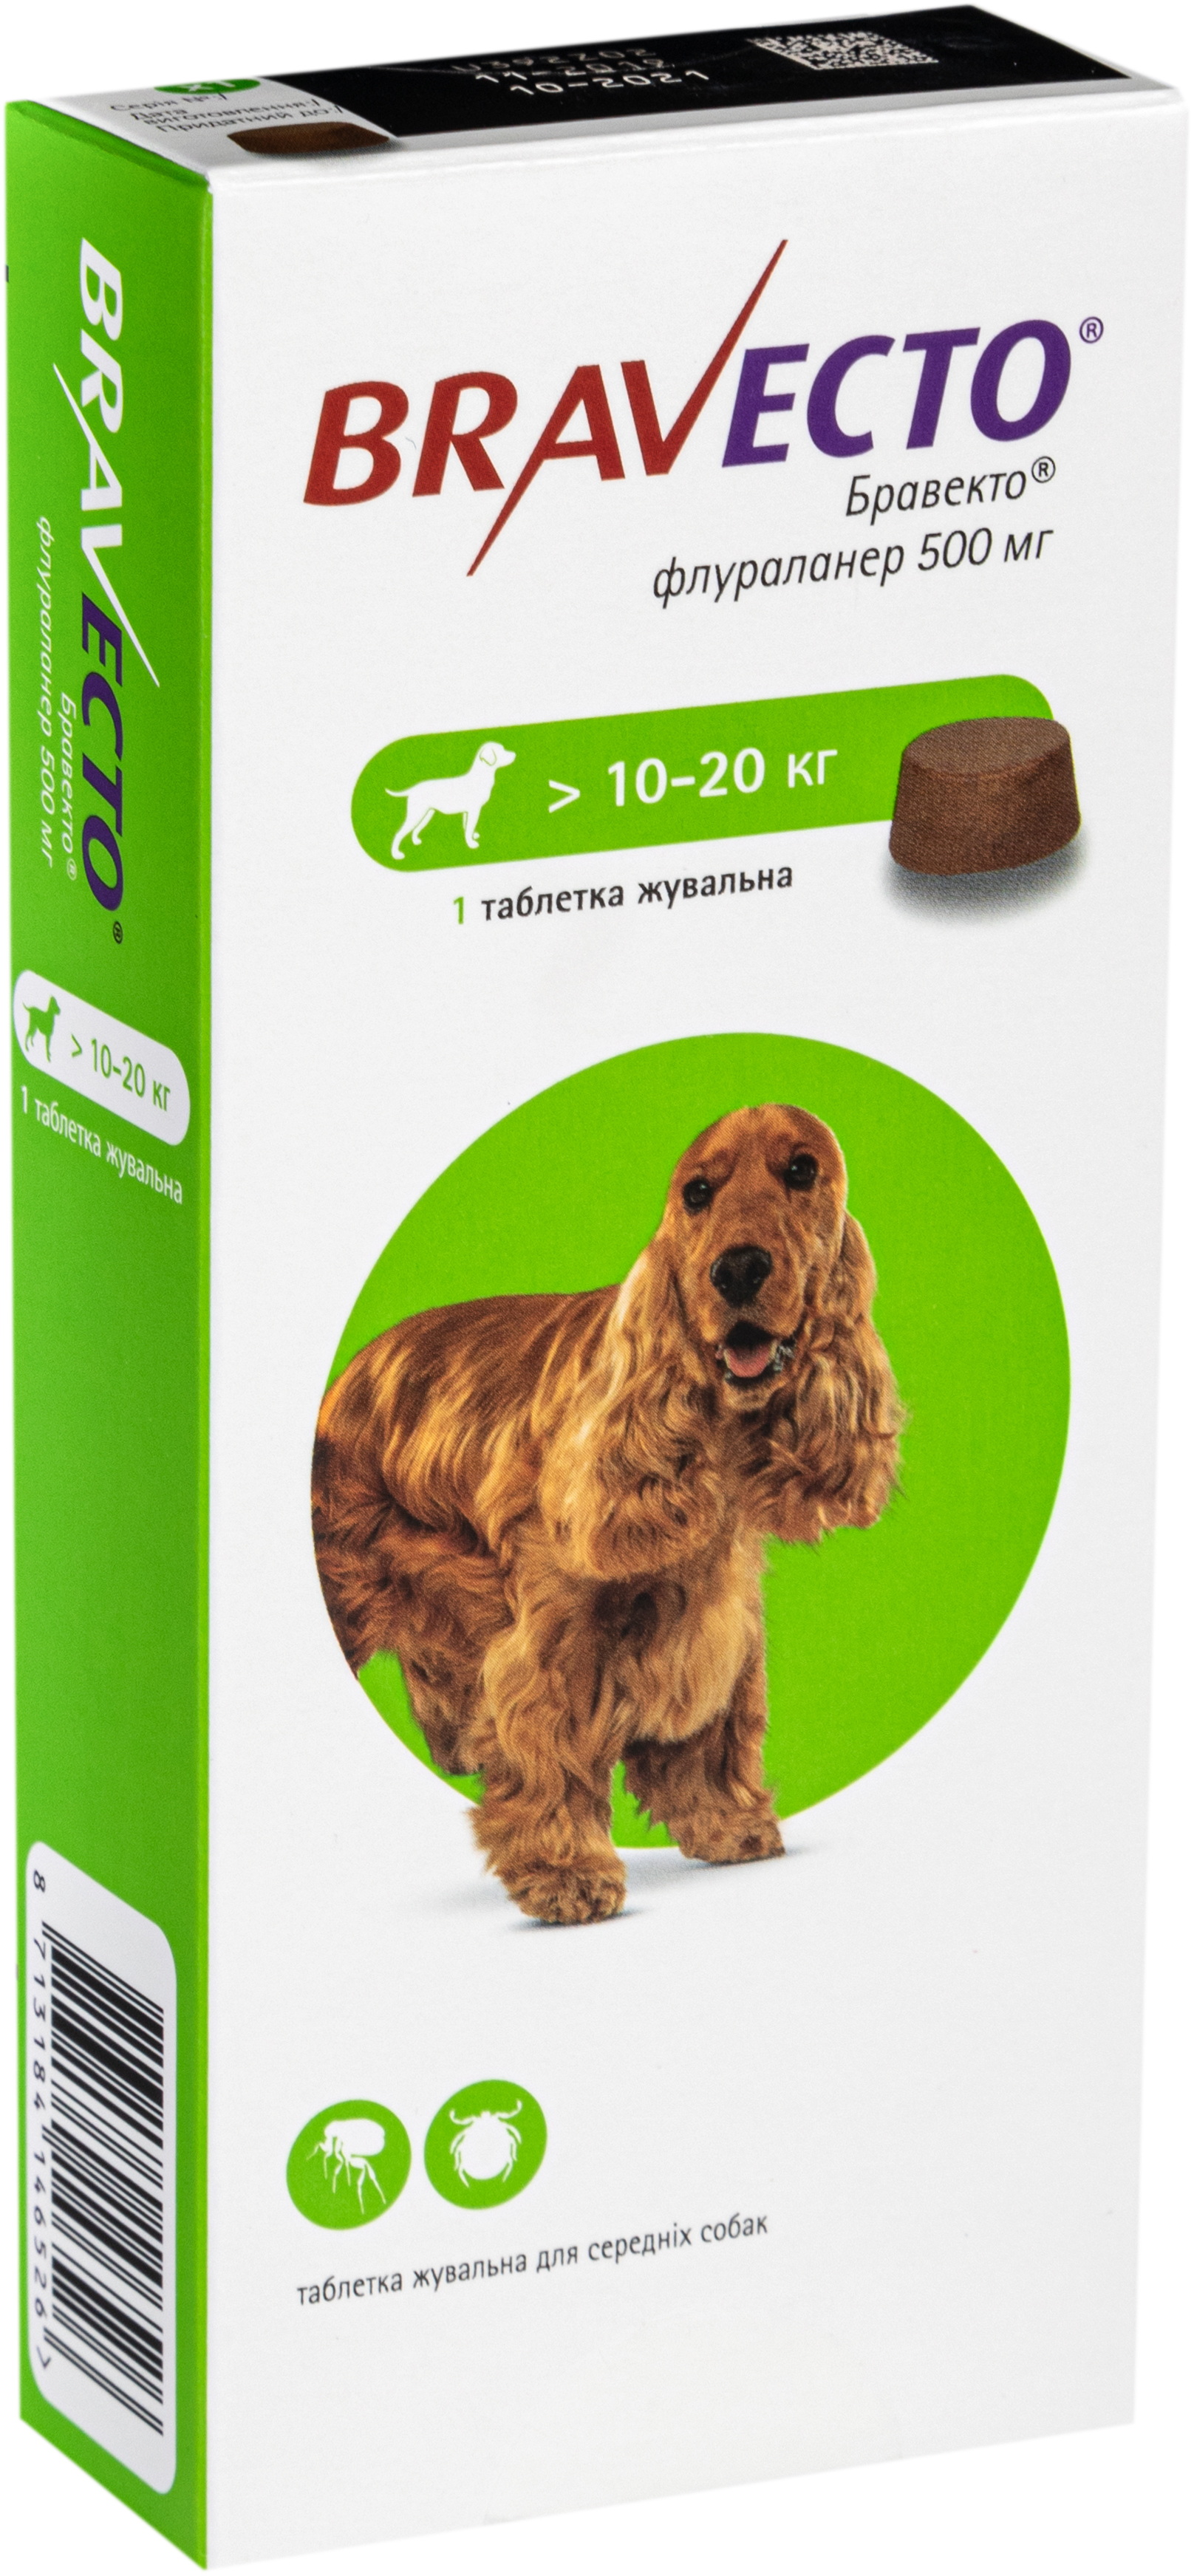 Жевательная таблетка Bravecto, для собак массой от 10 до 20 кг 1 шт. - фото 2